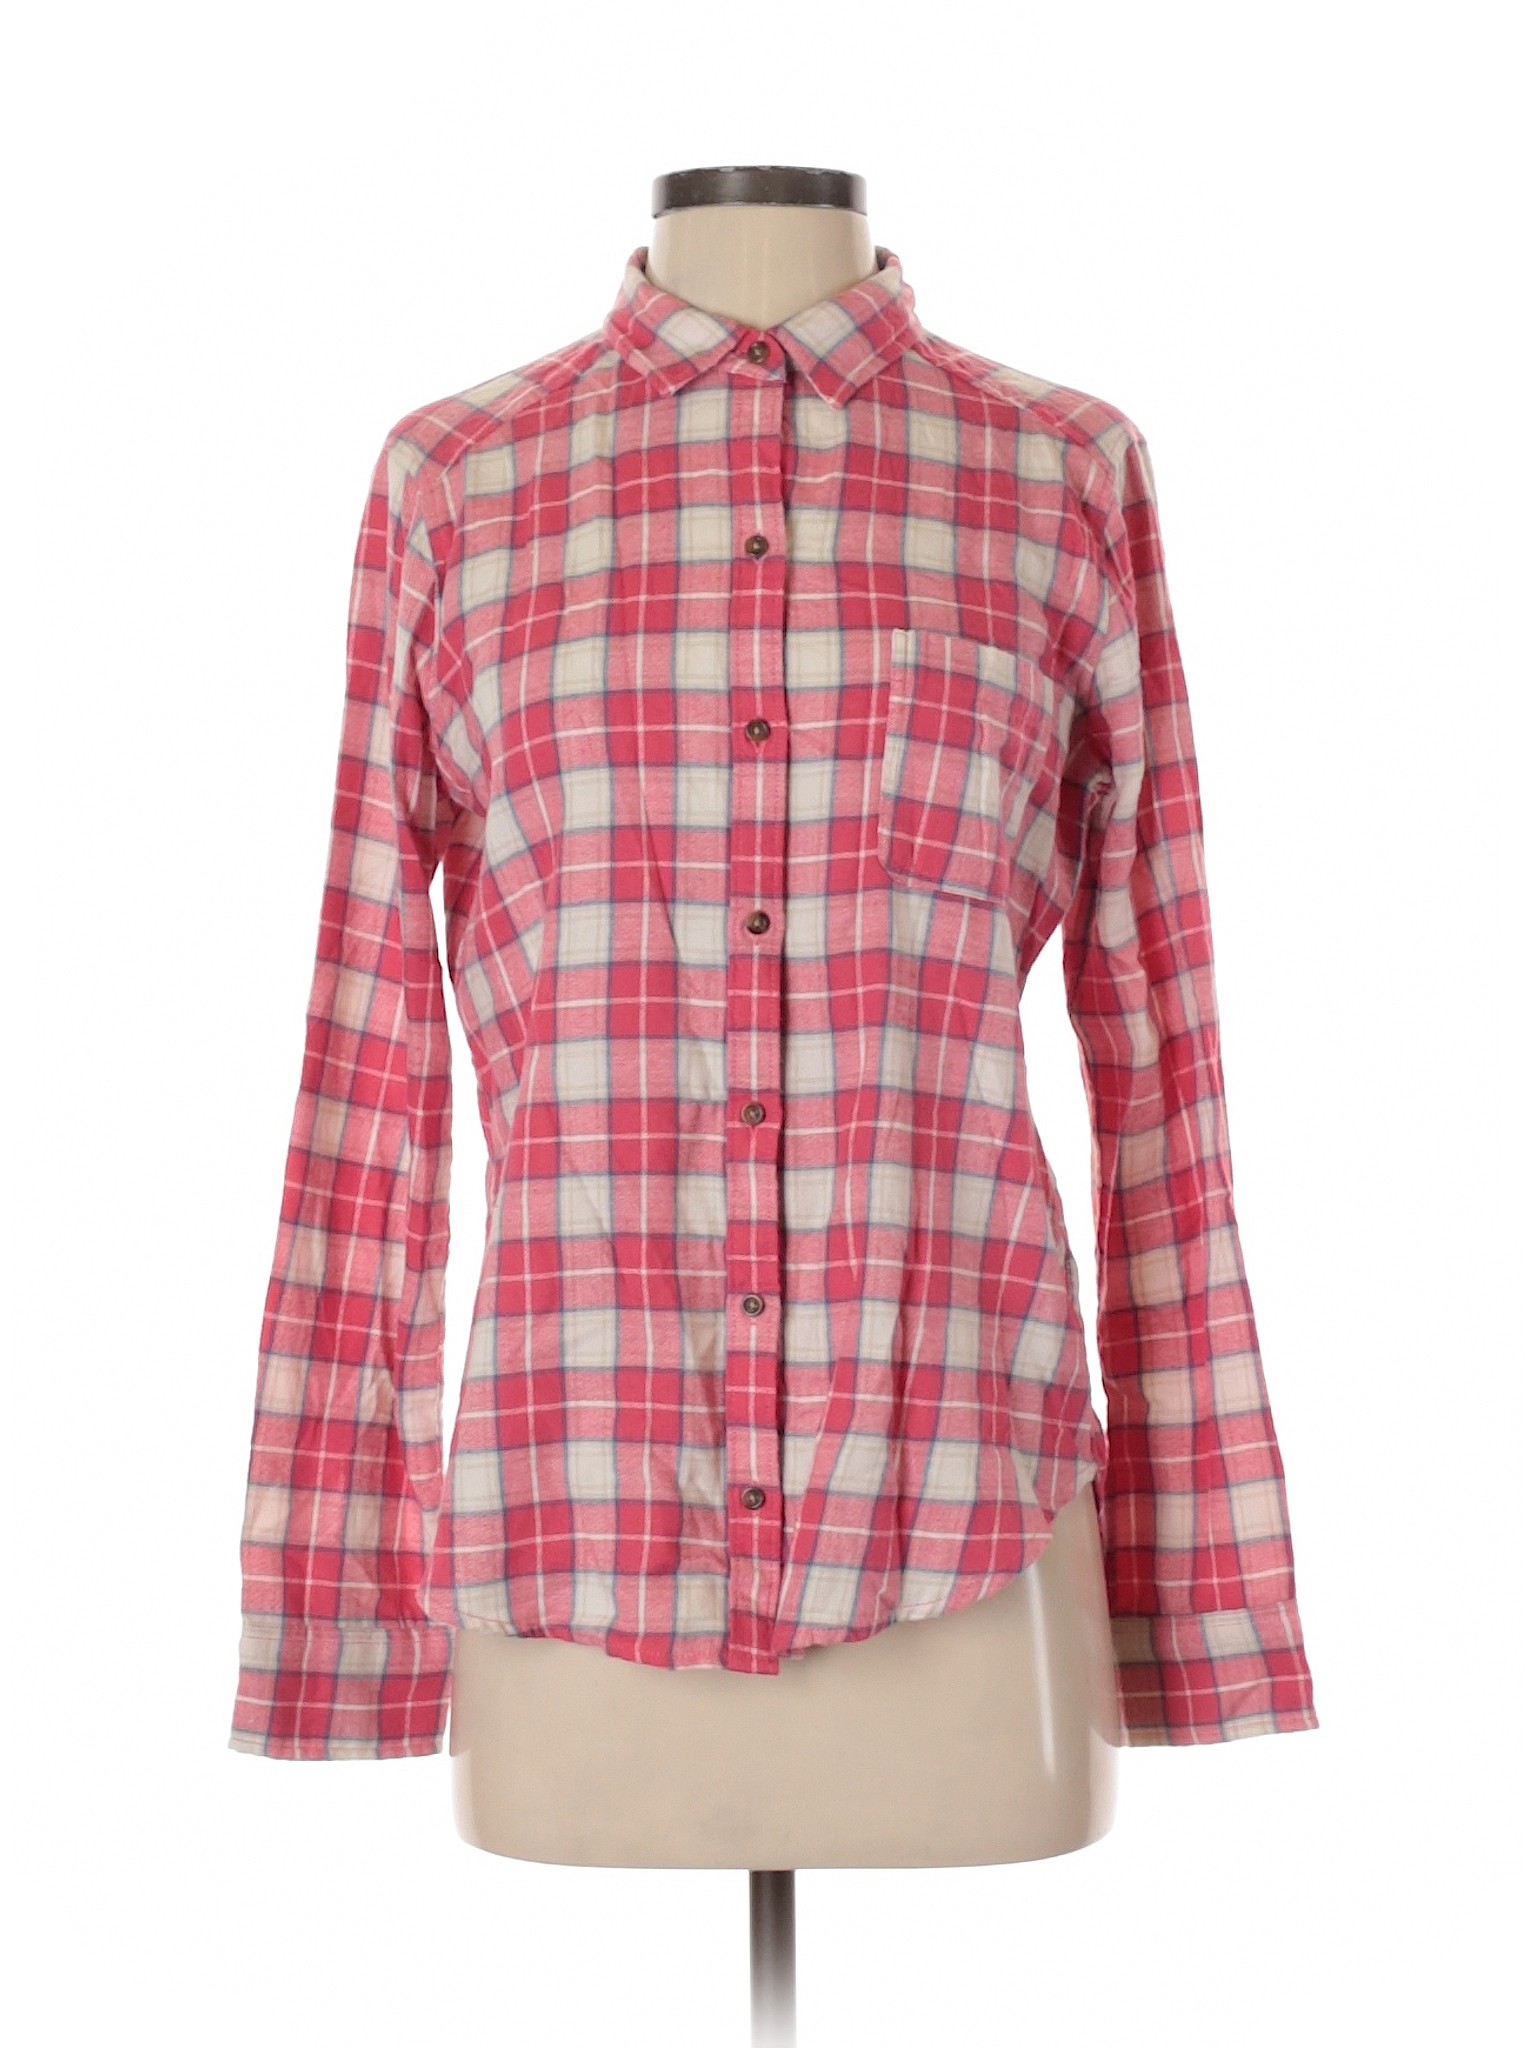 Hollister Women Pink Long Sleeve Button-Down Shirt S | eBay